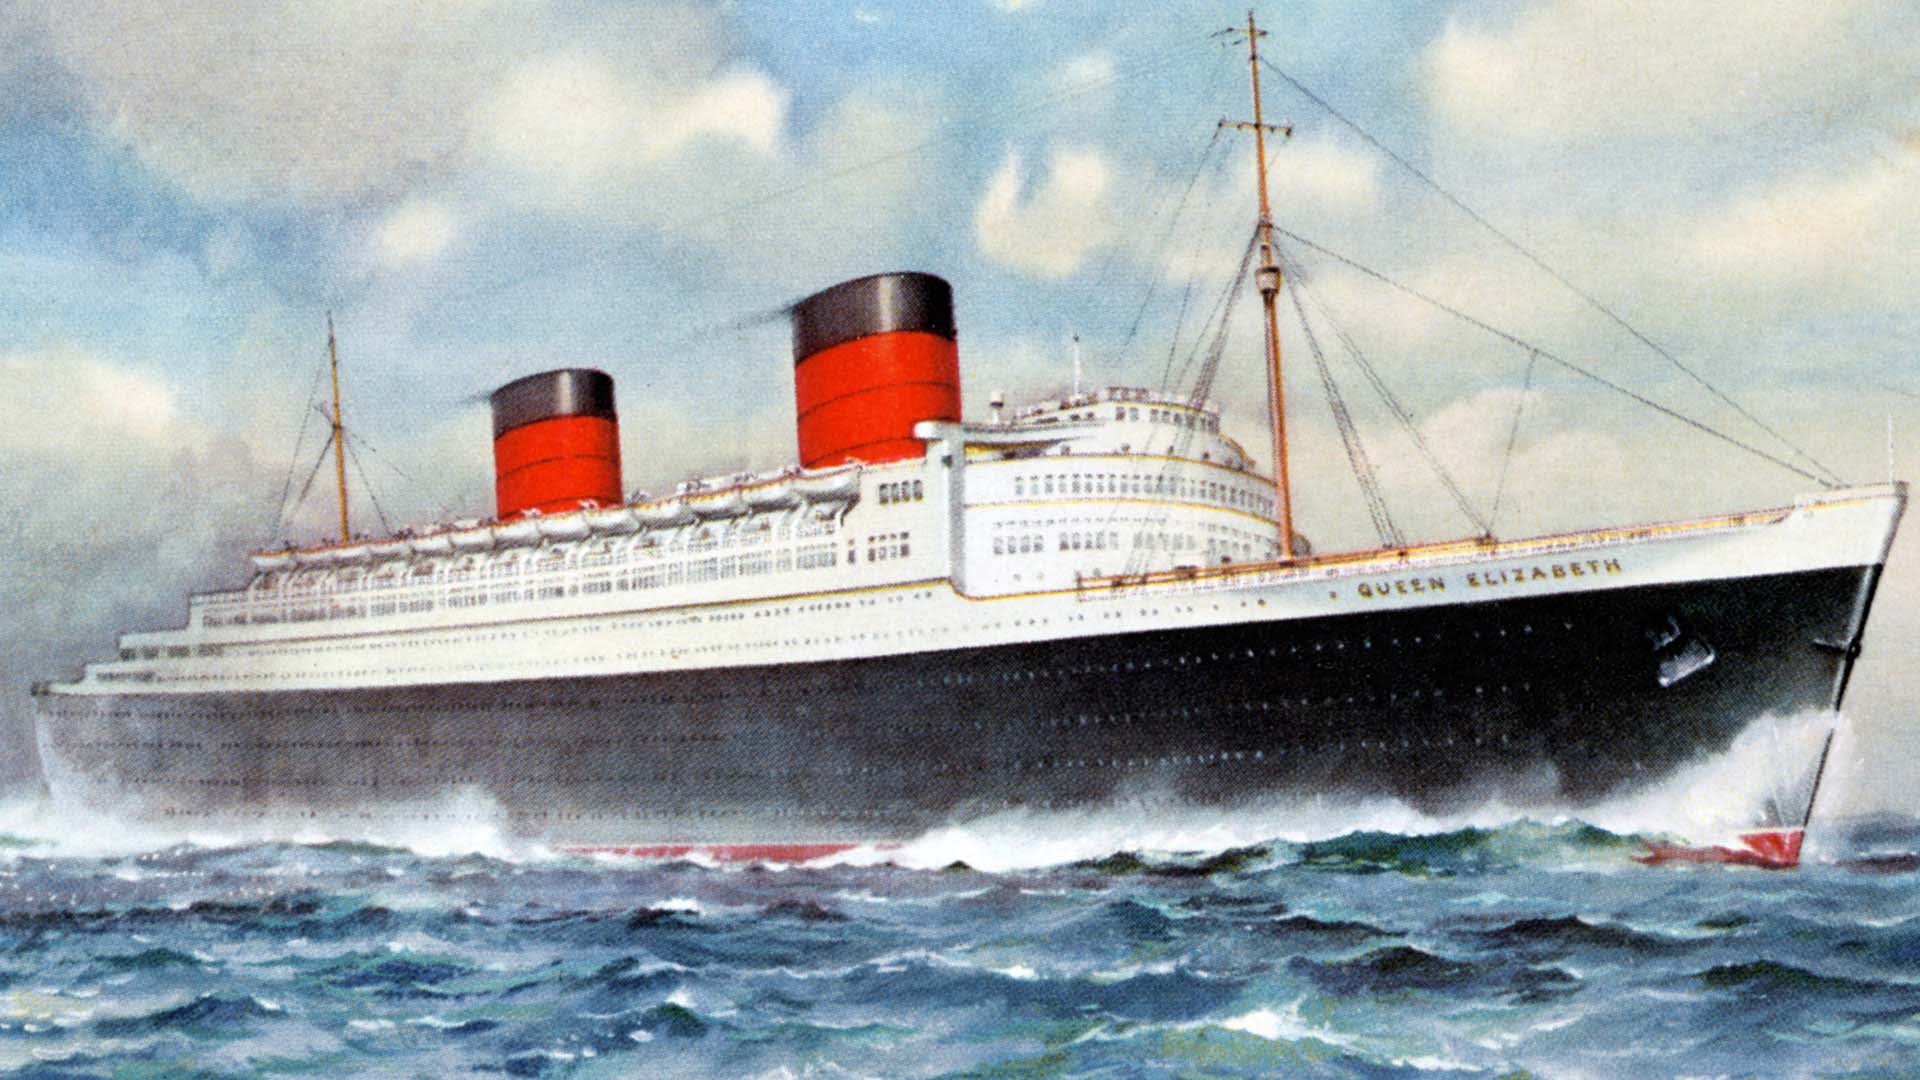 RMS Queen Elizabeth pomohla zkrátit druhou světovou válku